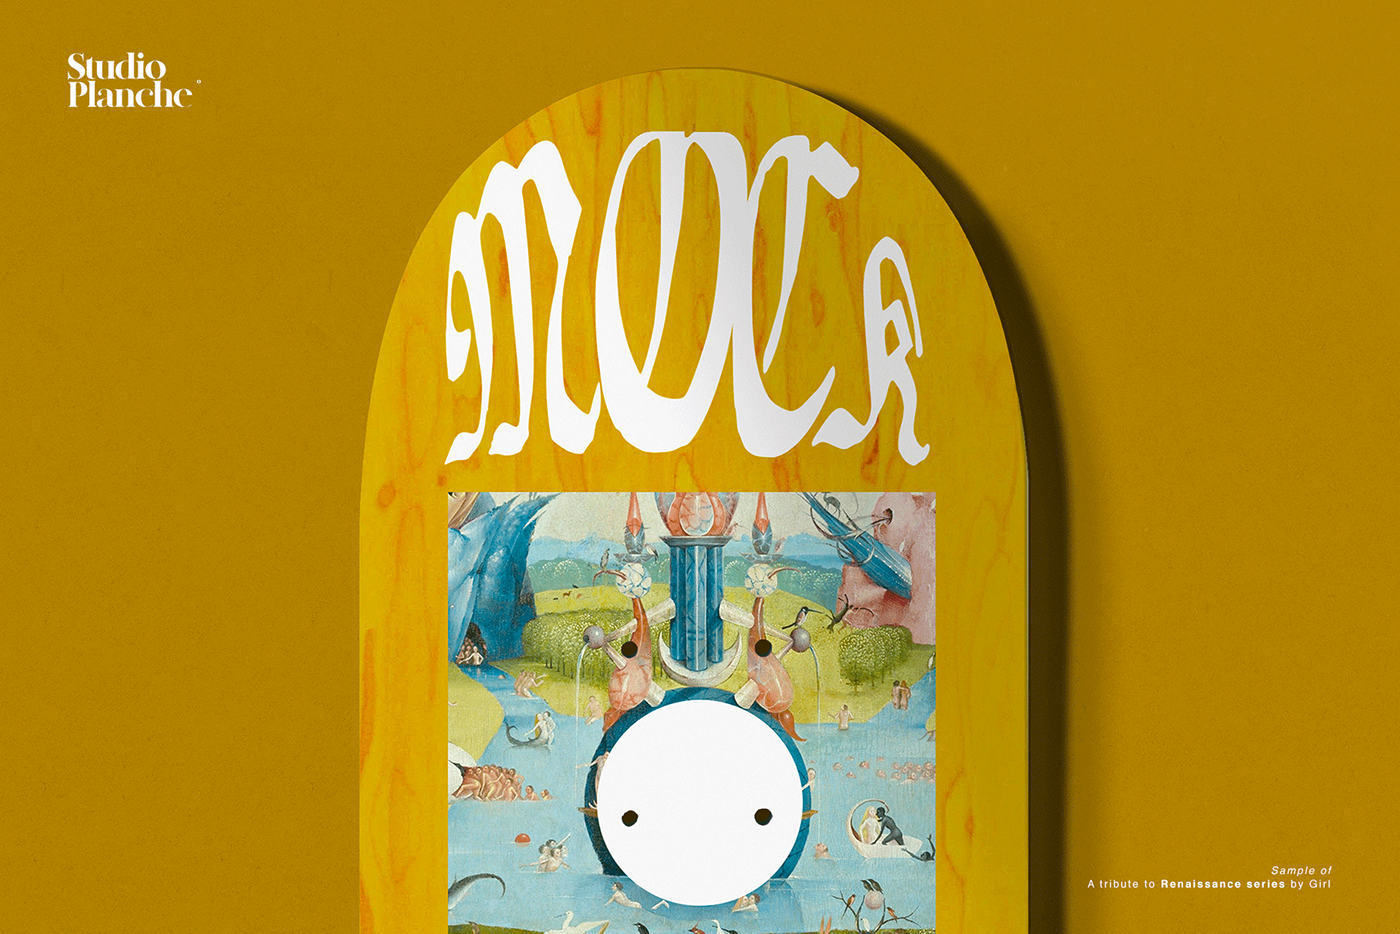 Board Custom mock-up Mockup mockups skate Skate deck Skate graphics skateboard template